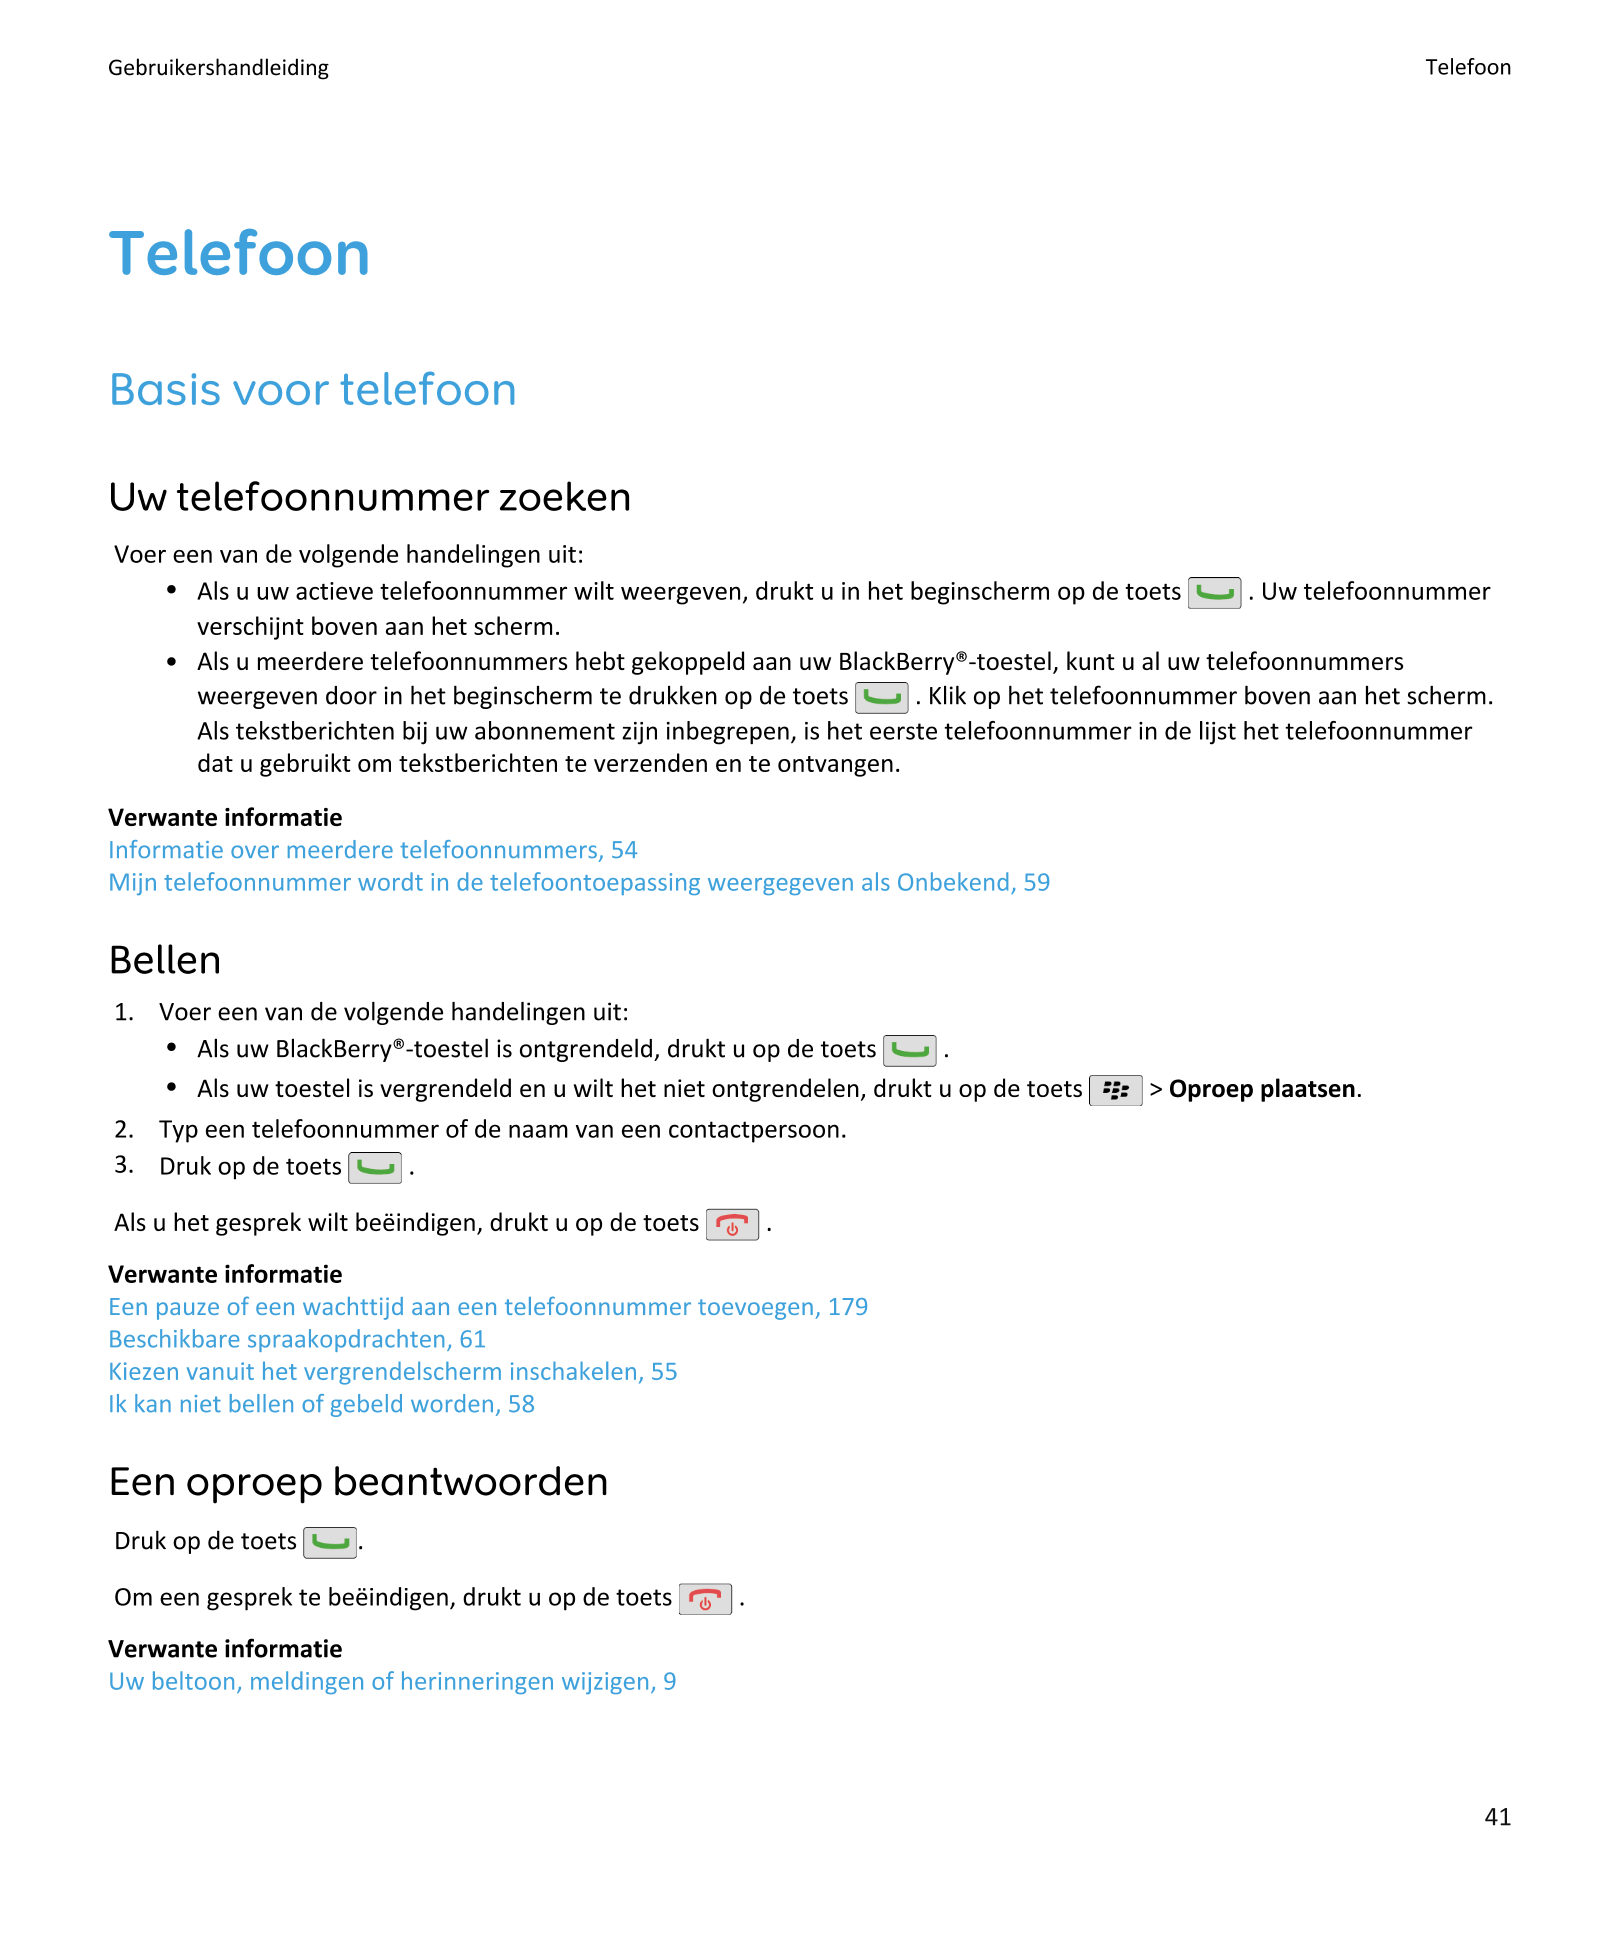 Gebruikershandleiding Telefoon
Telefoon
Basis voor telefoon
Uw telefoonnummer zoeken
Voer een van de volgende handelingen uit:
•